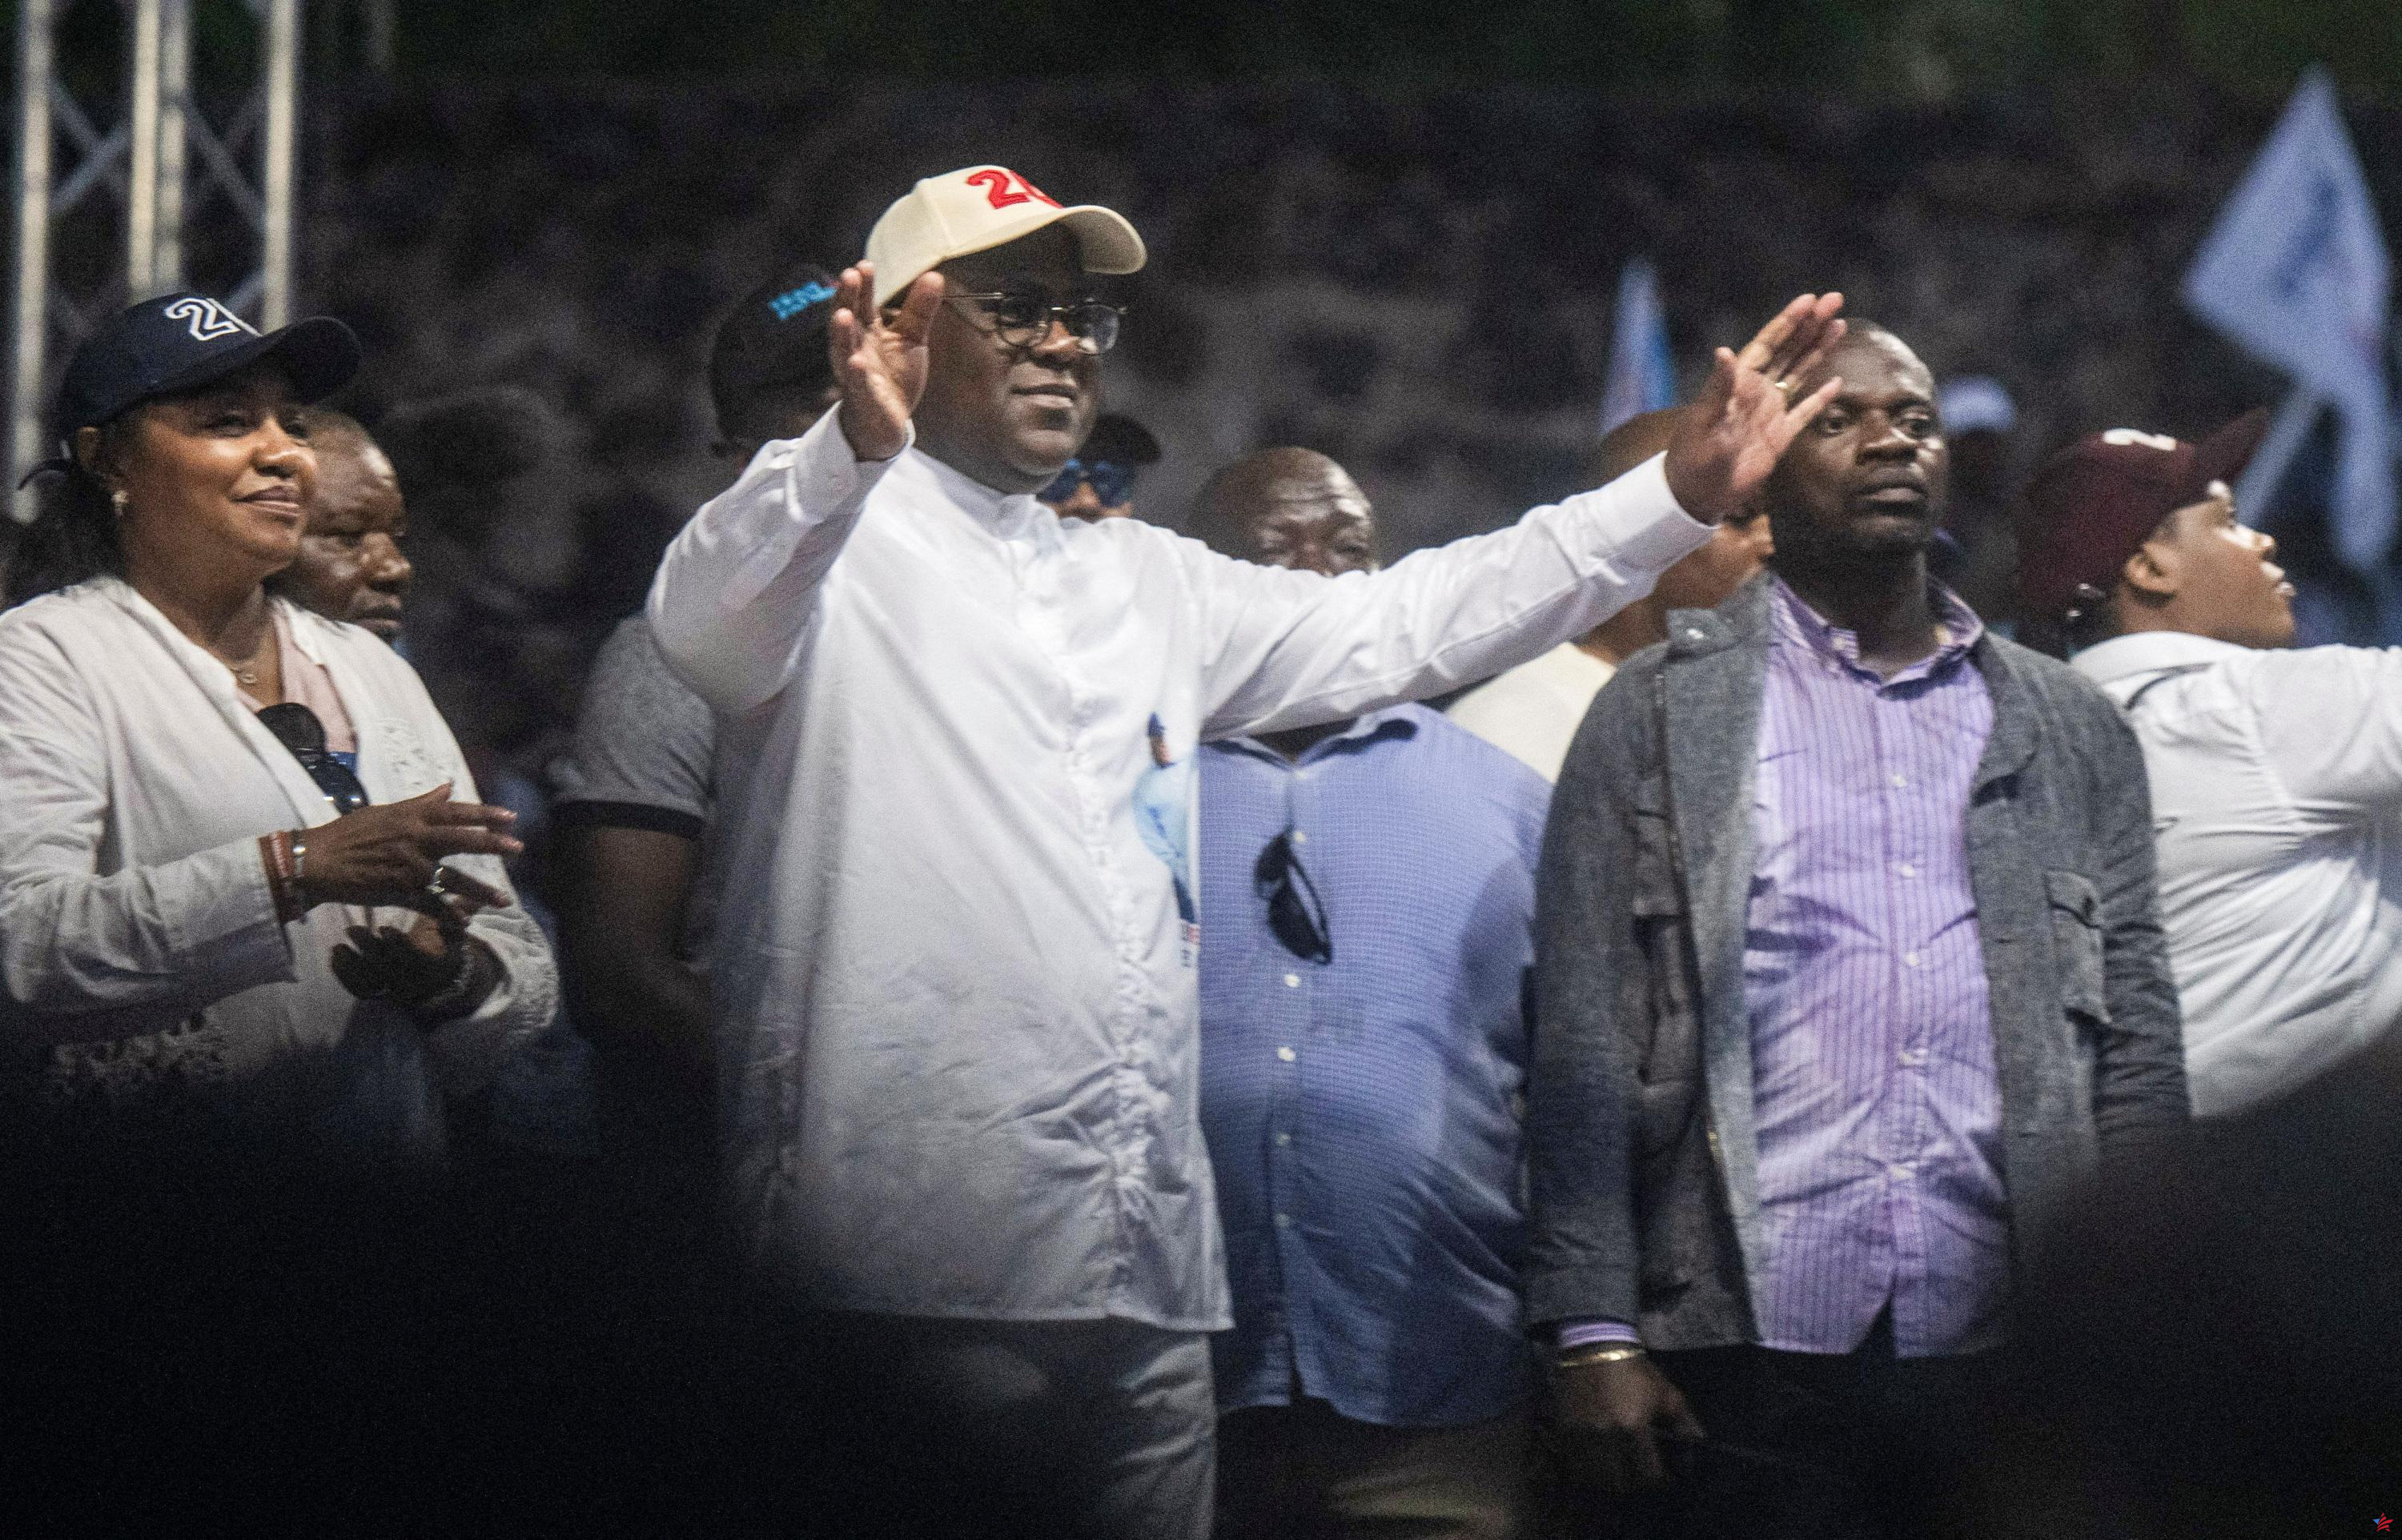 París felicita a Tshisekedi y pide “diálogo” en la RDC